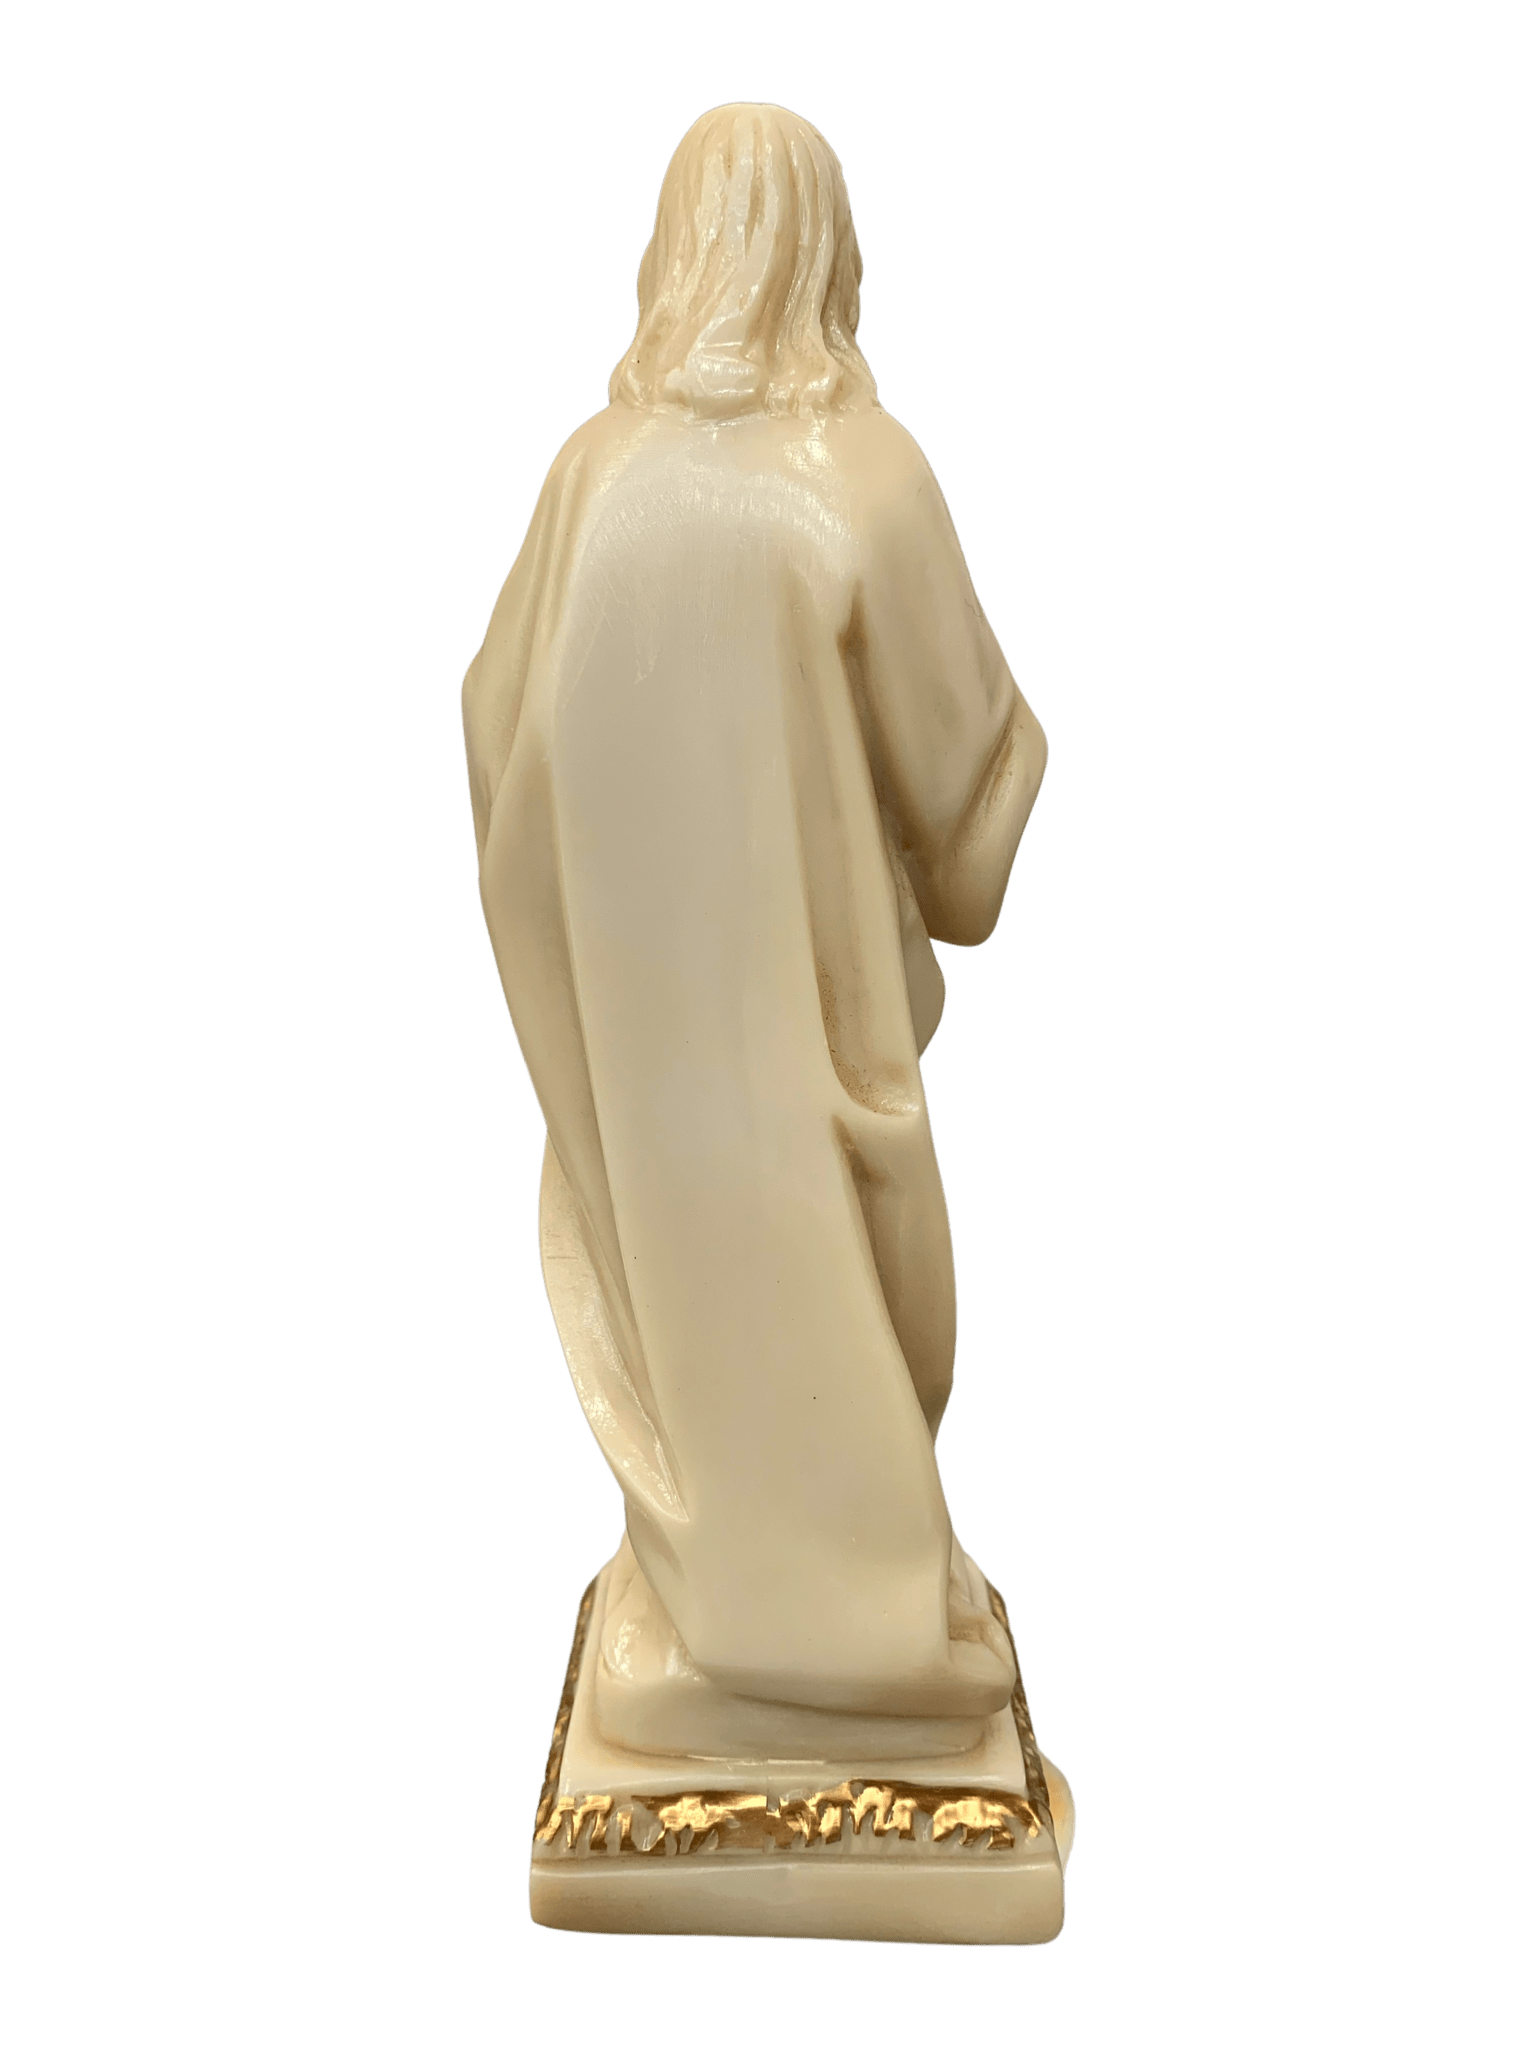 Imagem do Sagrado Coração de Jesus Português 16,5 cm-TerraCotta Arte Sacra